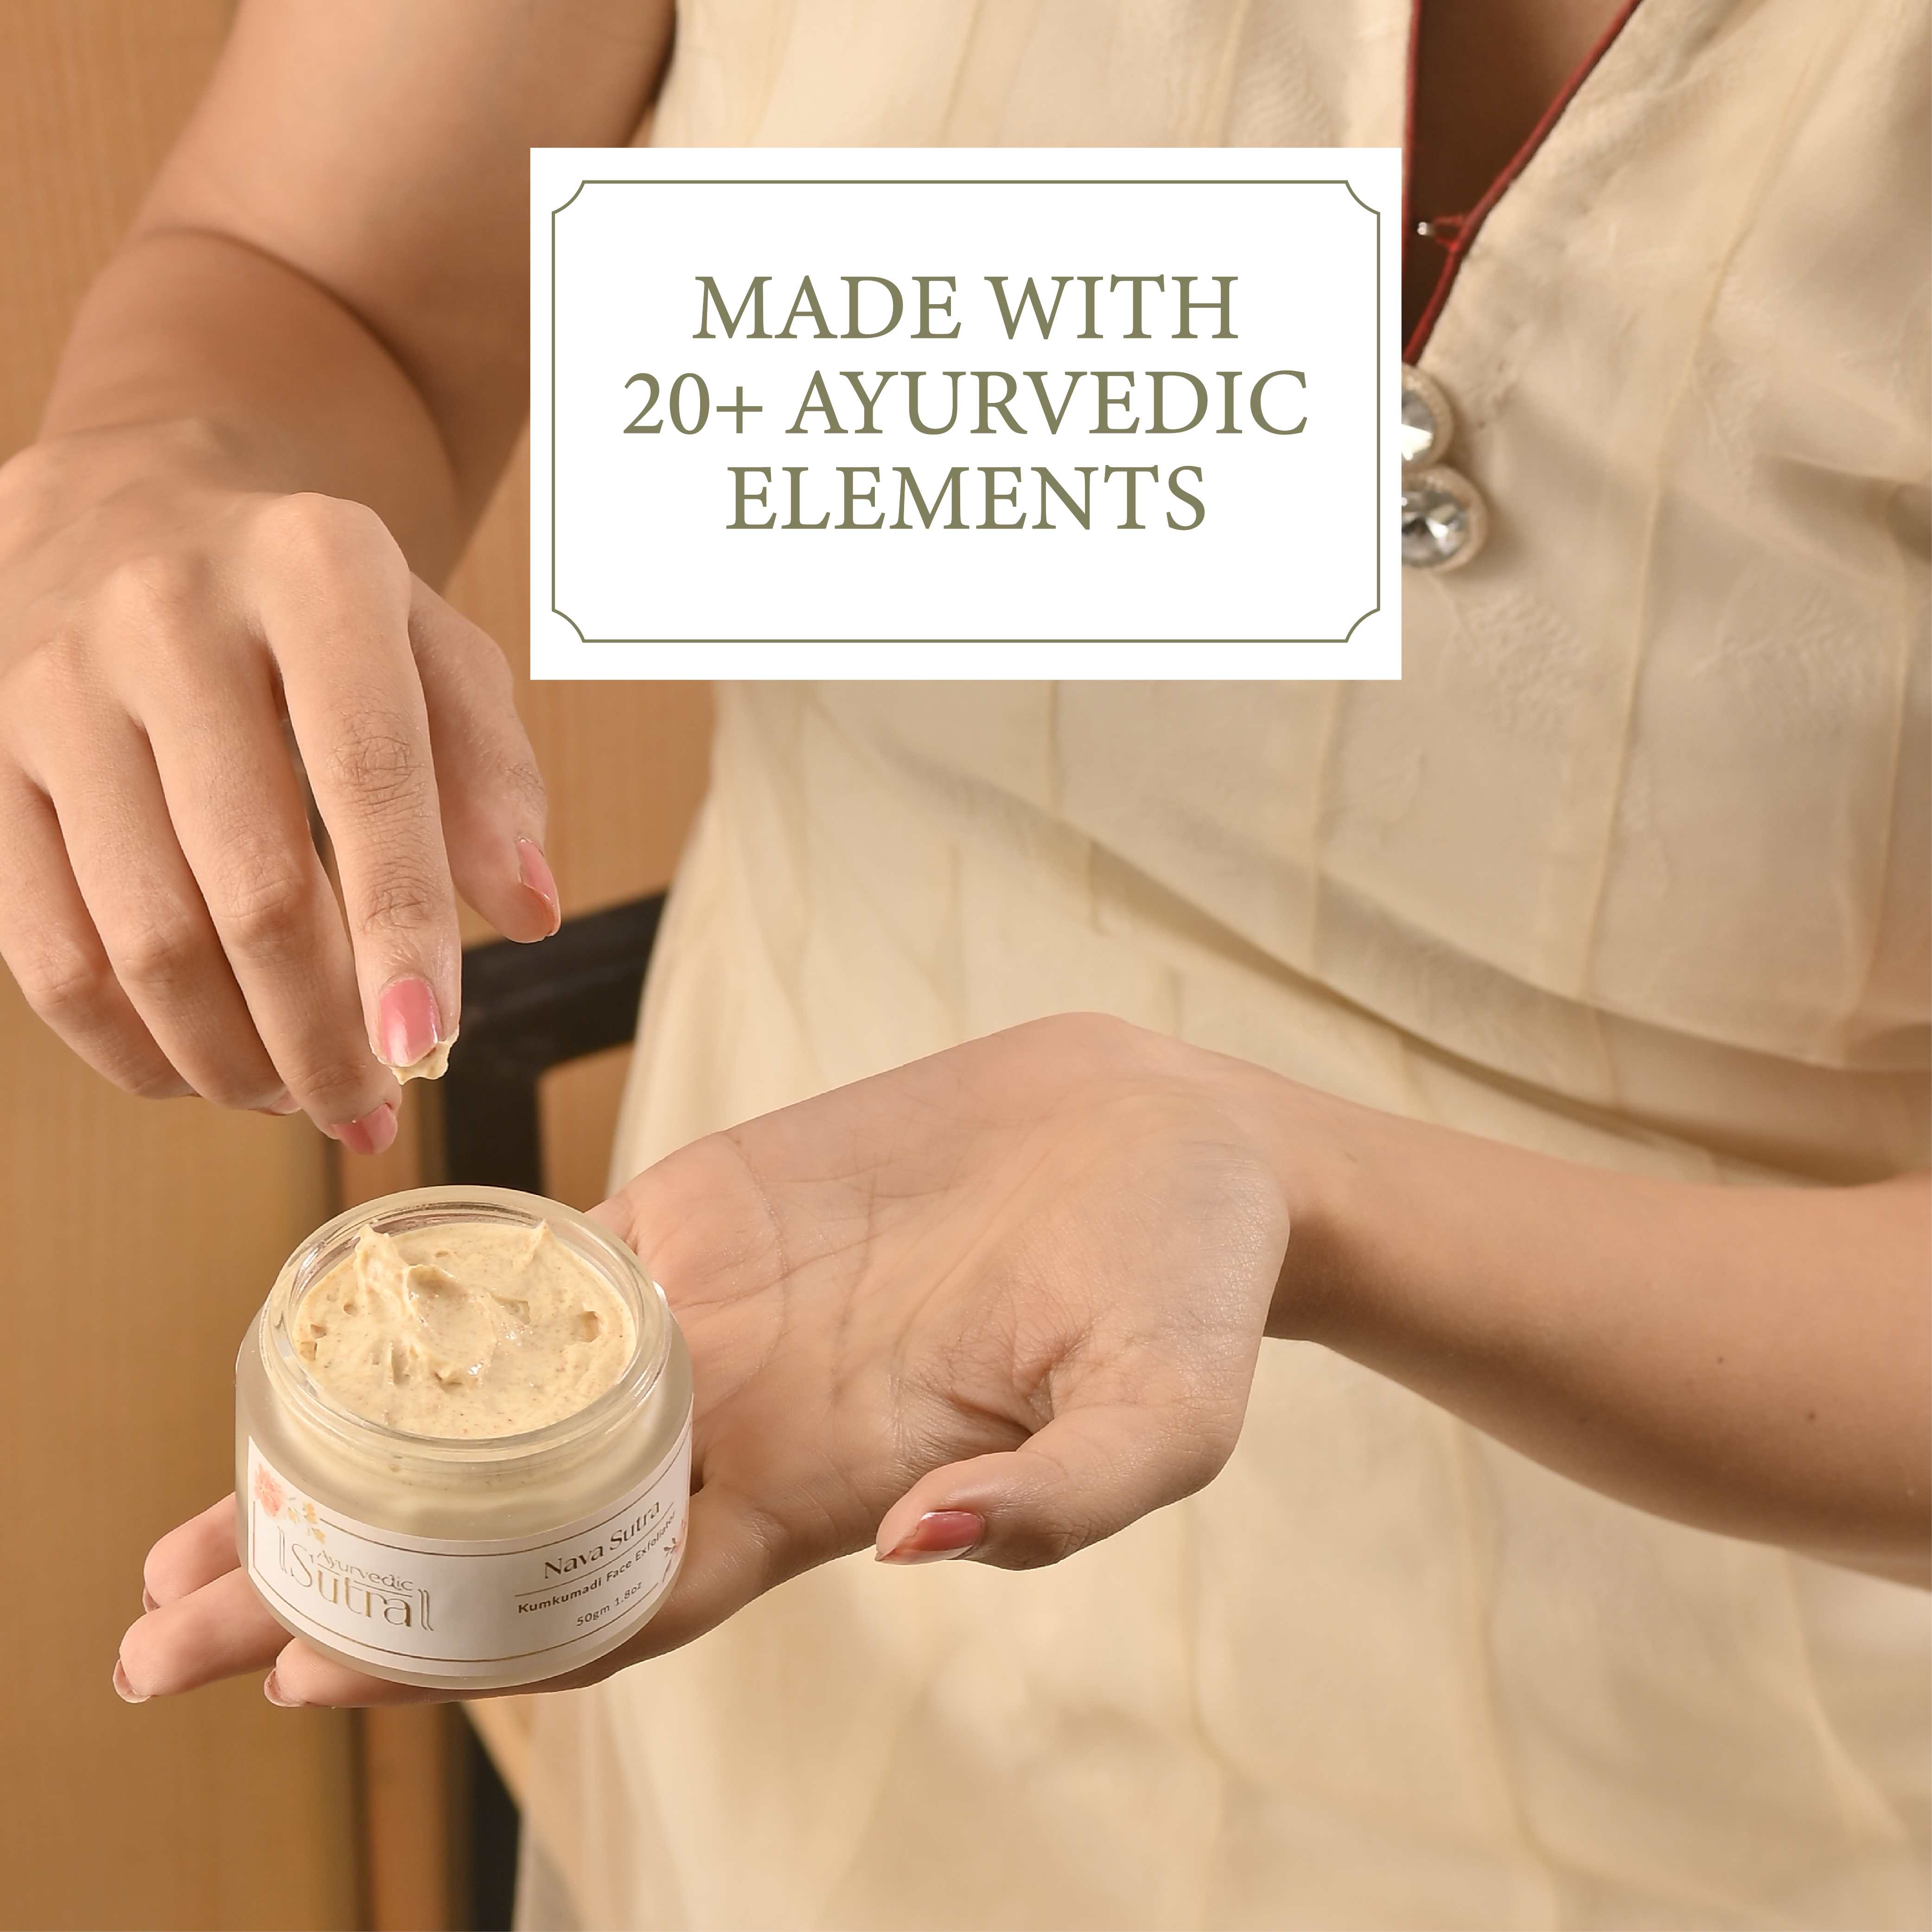 100% herbal Ayurvedic Face Scrub for Bright & Glowing Skin